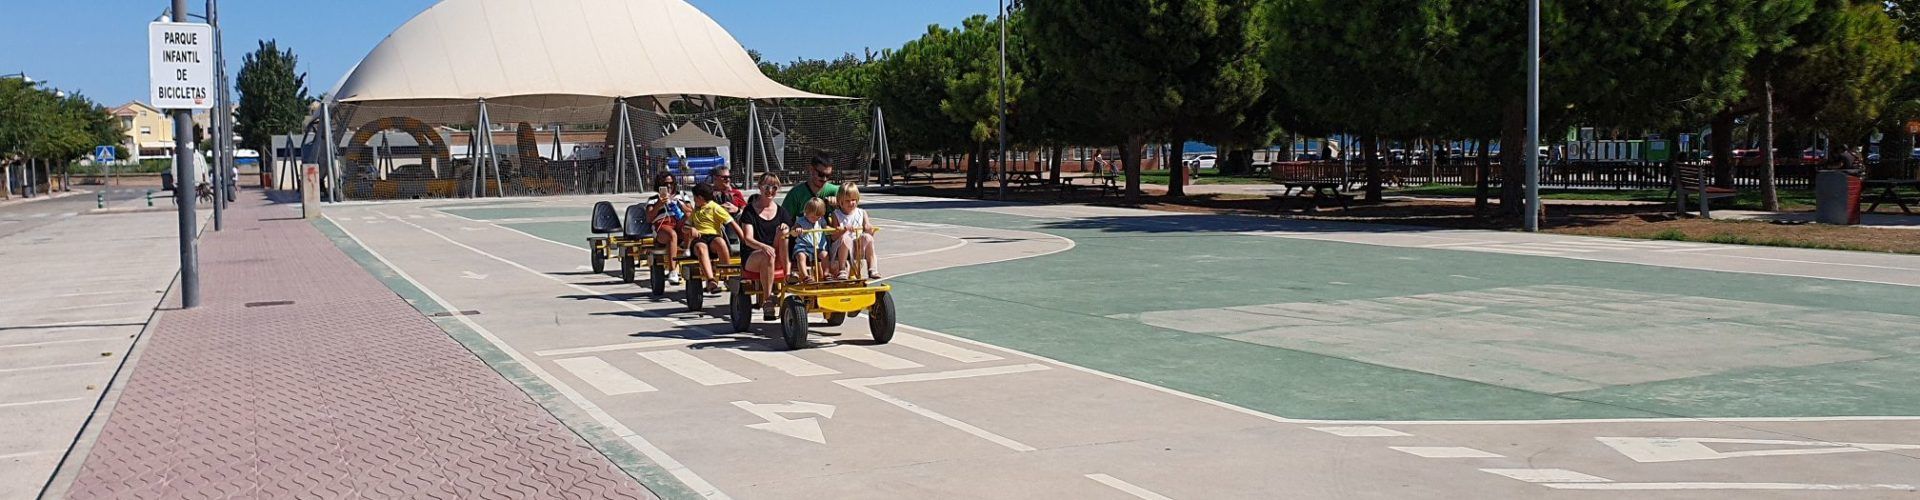 Vídeo i fotos: Un dissabte a Vinaròs per la Mobilitat Sostenible